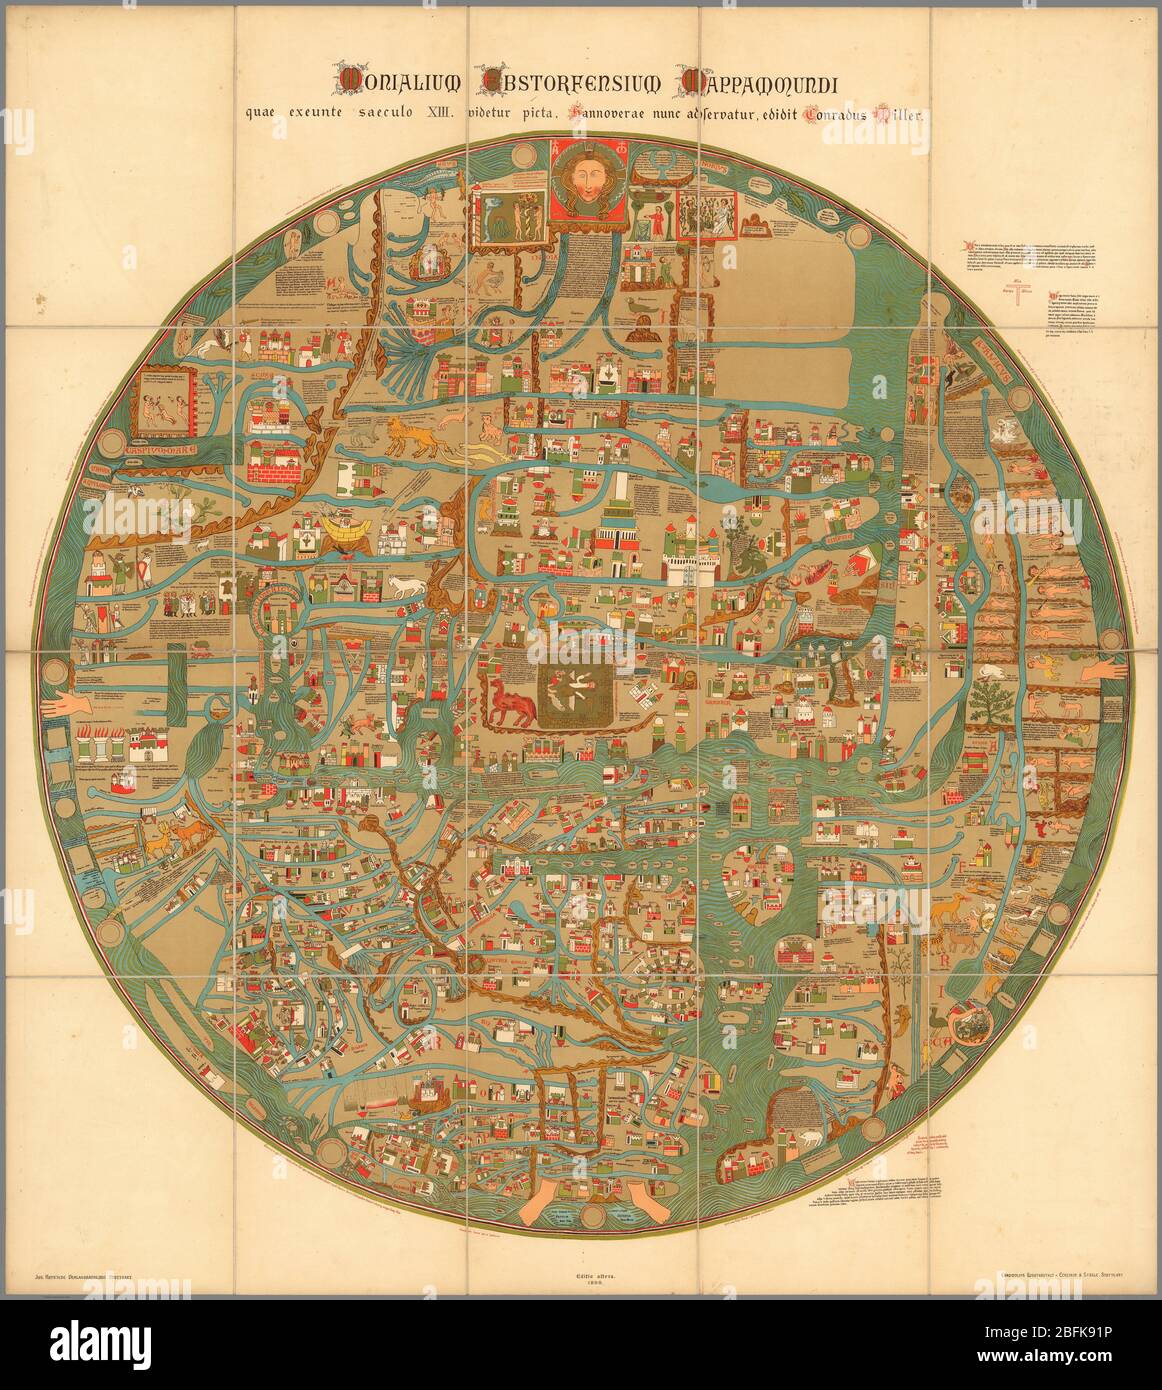 Word Map Monialium Ebstorfensium mappa mundi Erschienen 1898 auf der Karte des 13. Jahrhunderts von Gervase von Ebstorf Bunte, kreisförmige Bildkarte der Welt, Durchmesser 101, auf Blatt 118x106, unterteilt in 20 Abschnitte 29x21, auf Leinen montiert. Die in Stuttgart gedruckte Karte ist eine Reproduktion der berühmten Ebstorf-Karte, die 1943 zerstört wurde. Diese große, kreisförmige 'appa mundi' von Gervase von Ebstorf ist eine der berühmtesten historischen Landkarten der Welt aus dem 13. Jahrhundert. Mit gemeinsamen mittelalterlichen Manuskriptsymbolen und den mittelalterlichen Formen von Ortsnamen spiegelt es die zeitgenössischen religiösen Ideen der Stockfoto